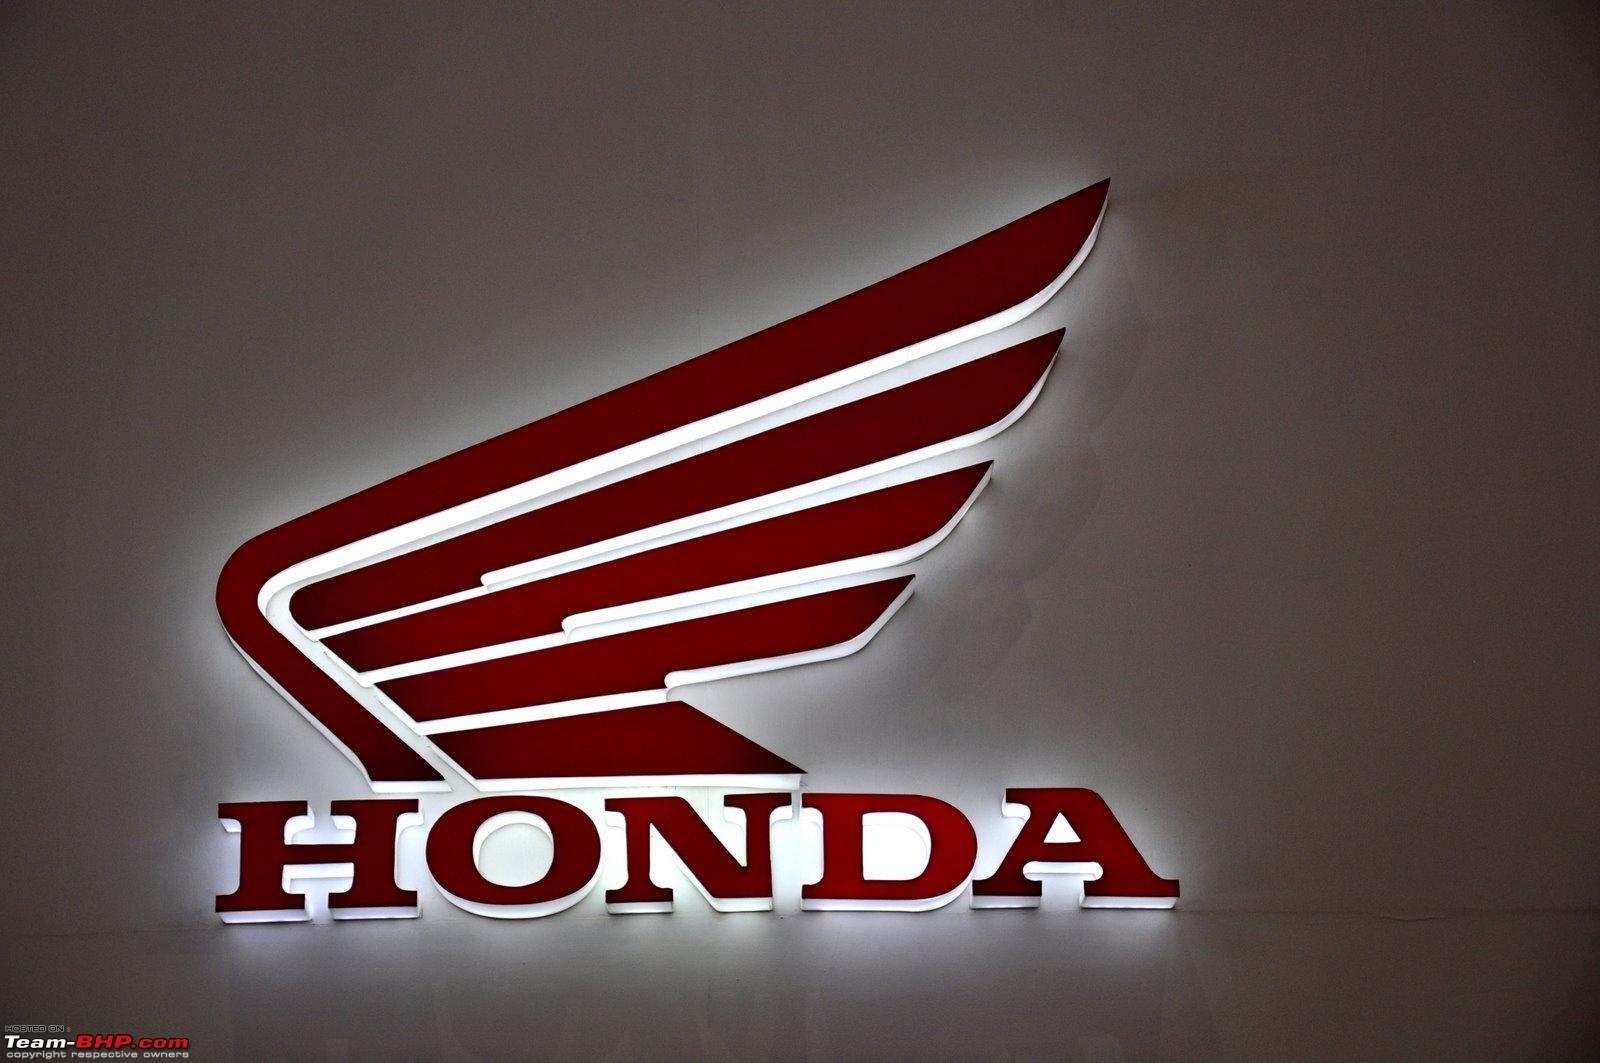 New Honda Motorcycle Logo - Littlemorrui2: Honda Motorcycle Logo Vector Images